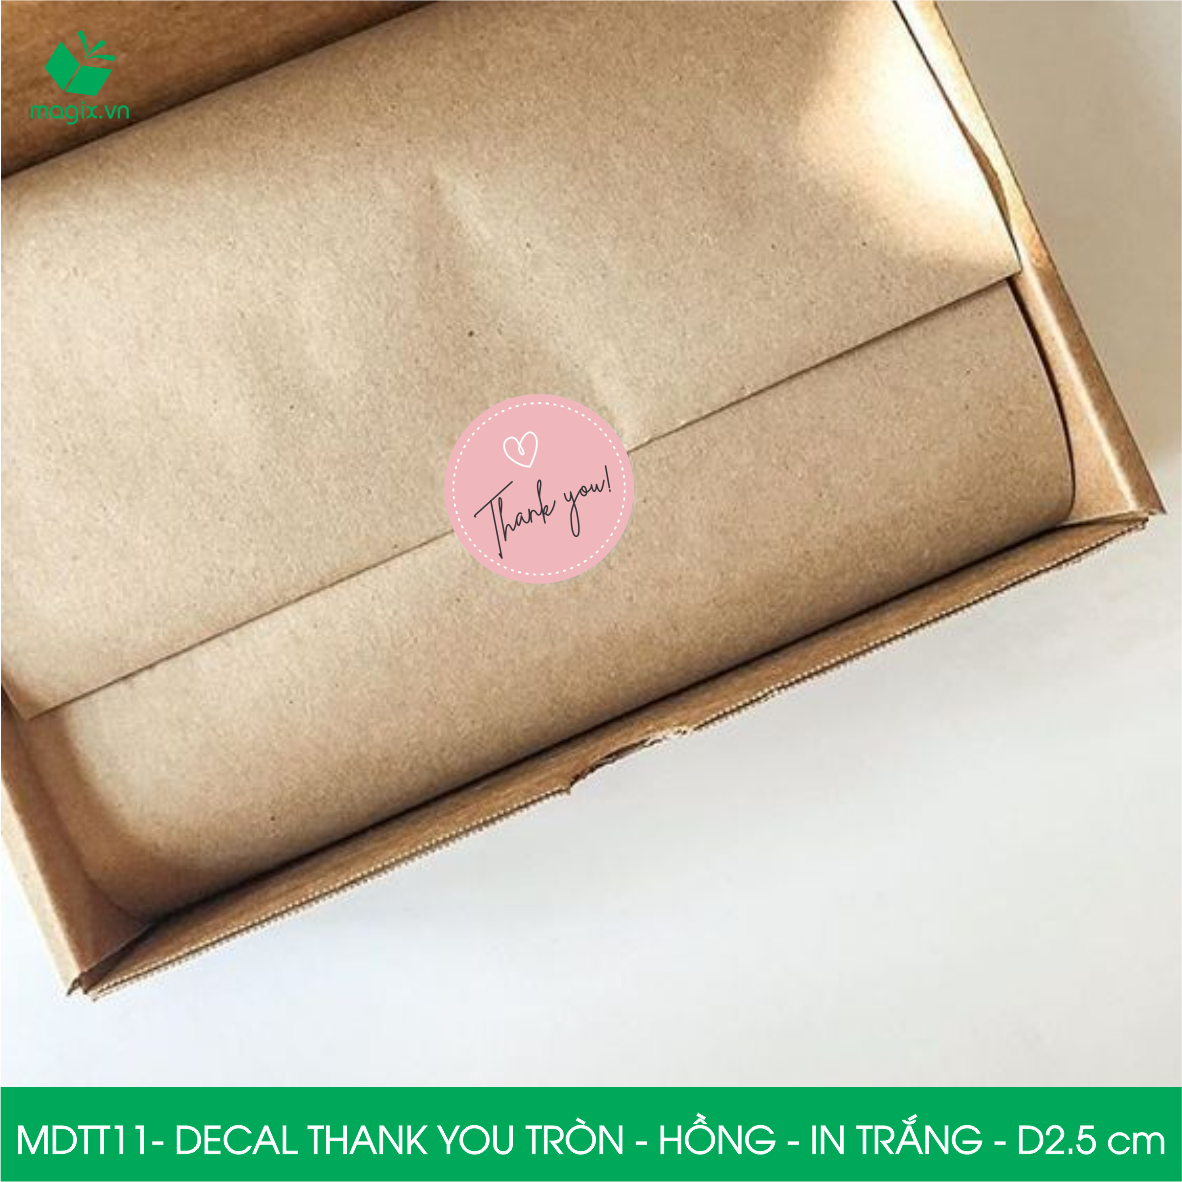 MDTT11 - D2.5cm - 50 Sticker Thank you, decal Thank you tròn dán hộp carton, tem cám ơn, nhãn dán cảm ơn trang trí gói hàng